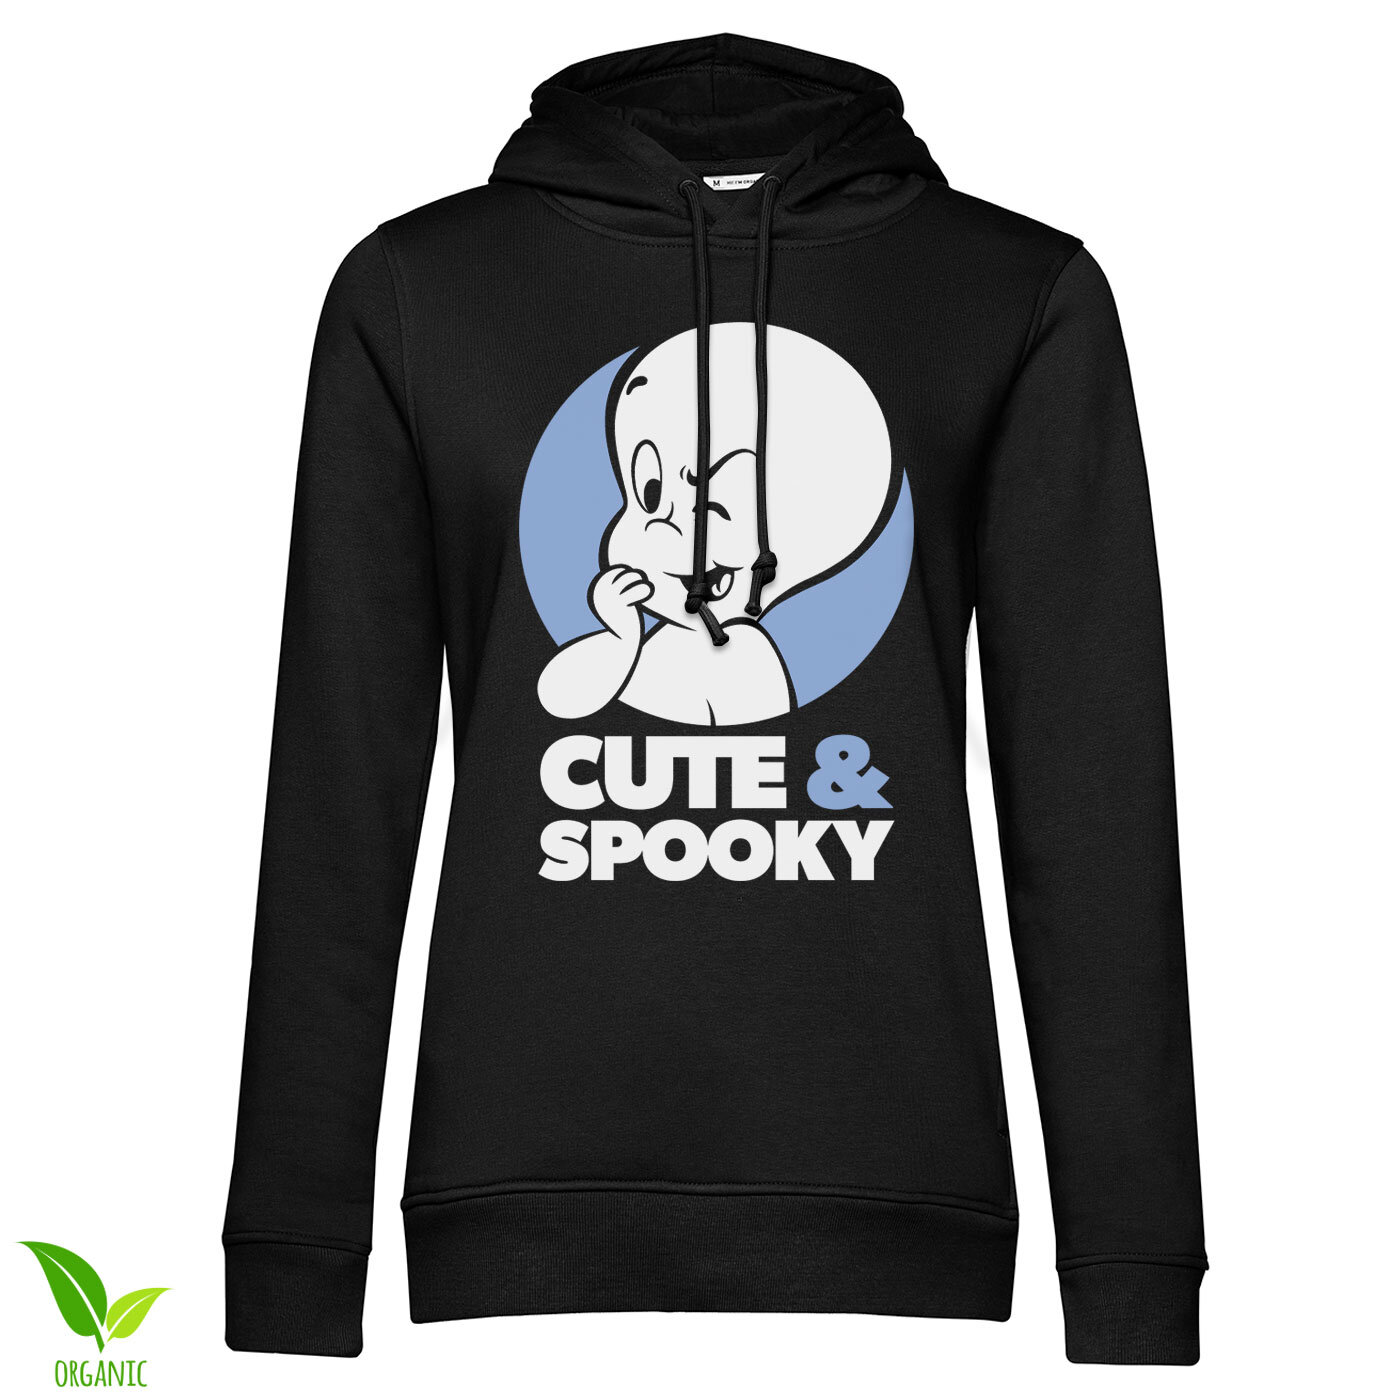 Cute & Spooky Girls Hoodie